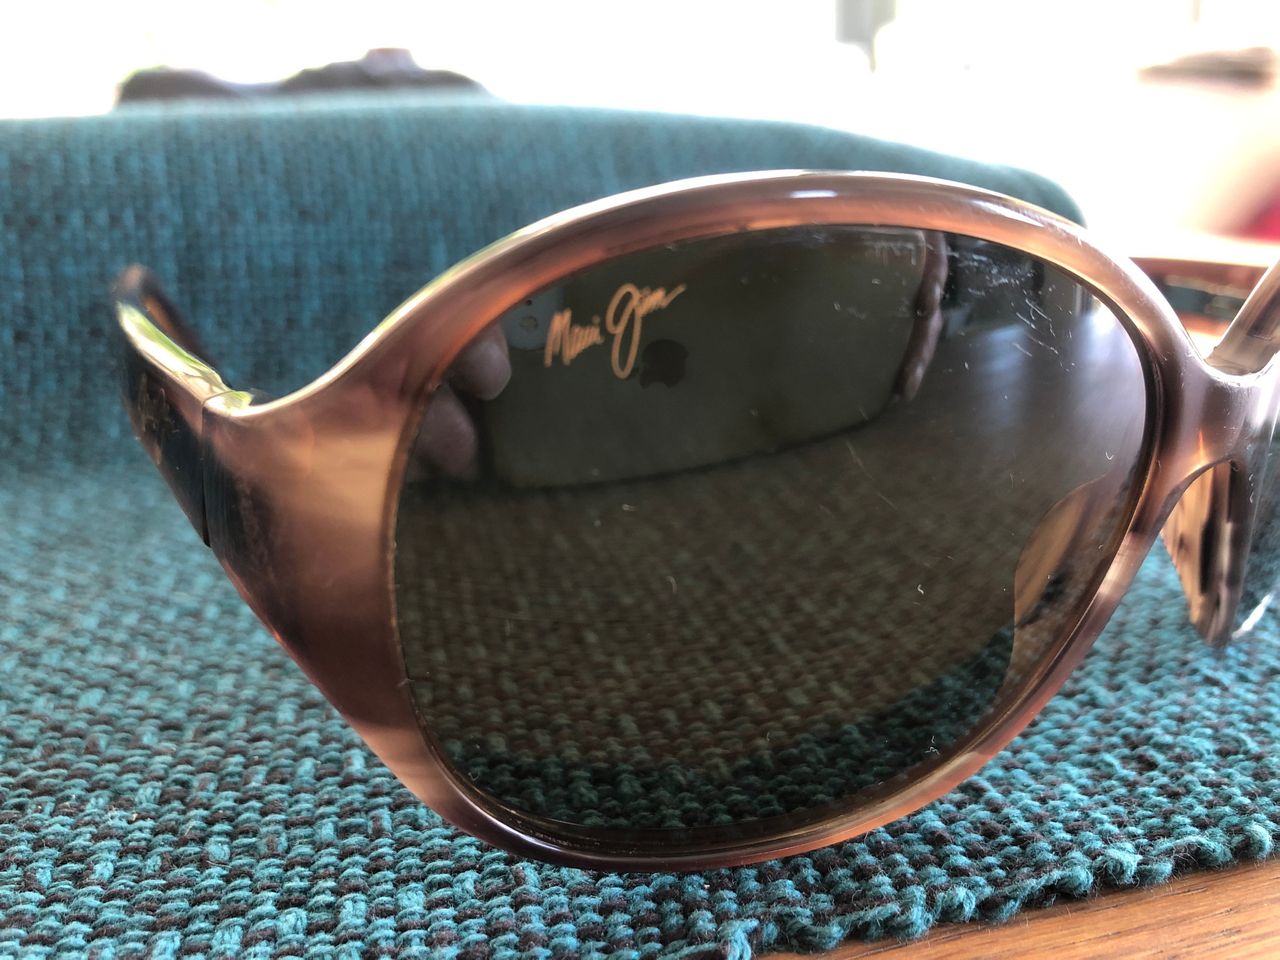 valgfri Biprodukt Premonition Maui Jim solbriller | FINN torget